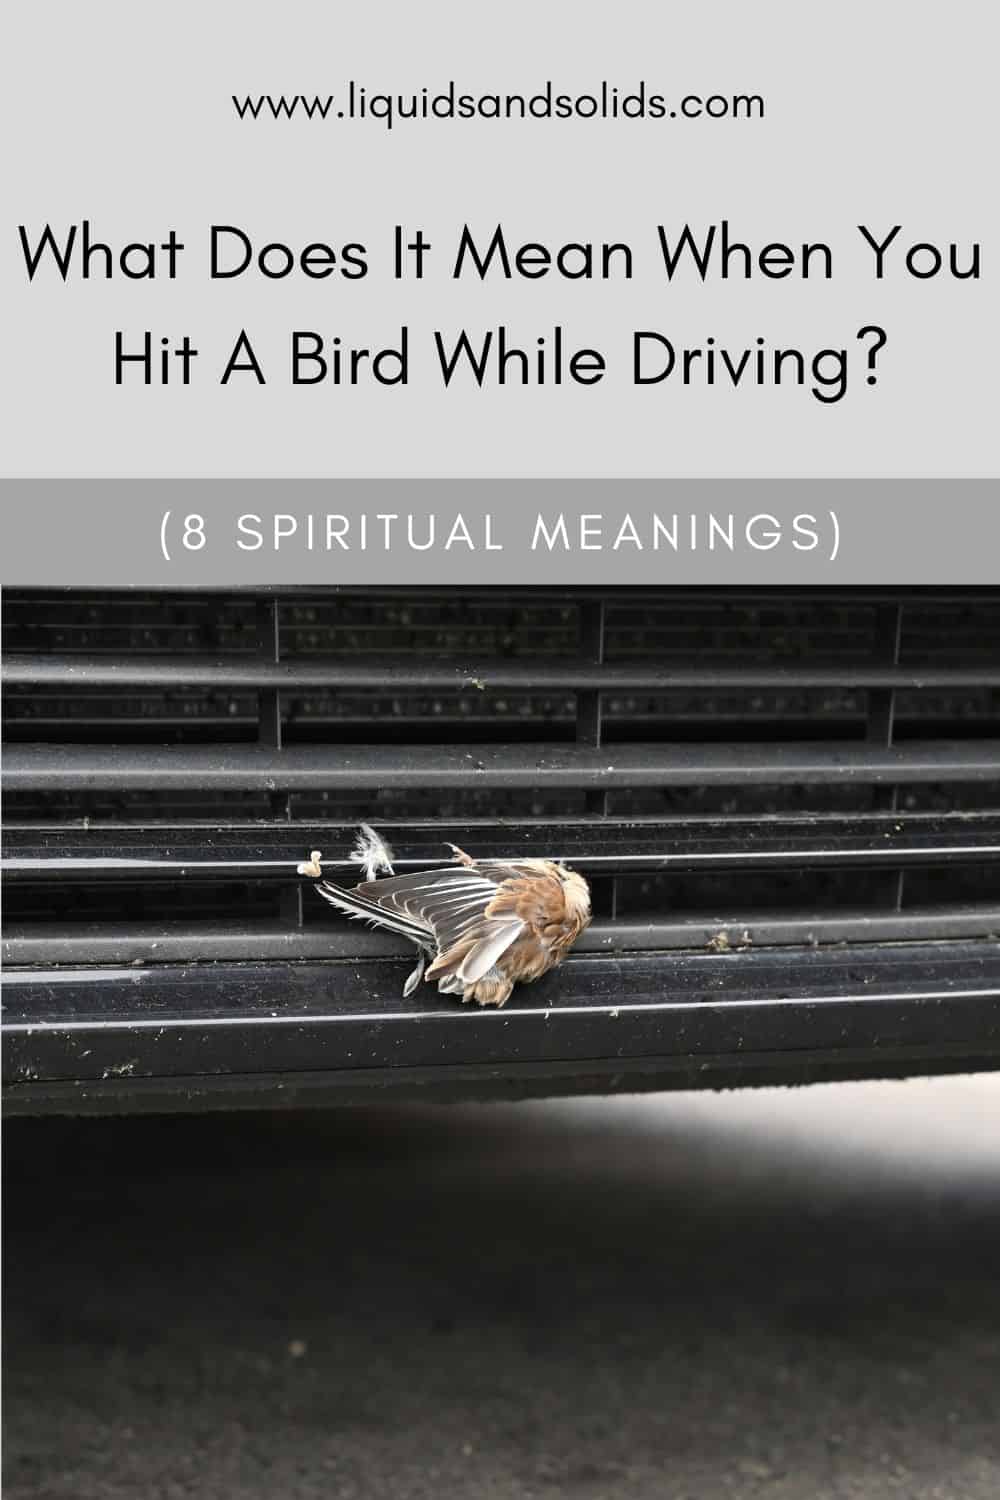  Ce que signifie heurter un oiseau en conduisant (8 significations spirituelles)